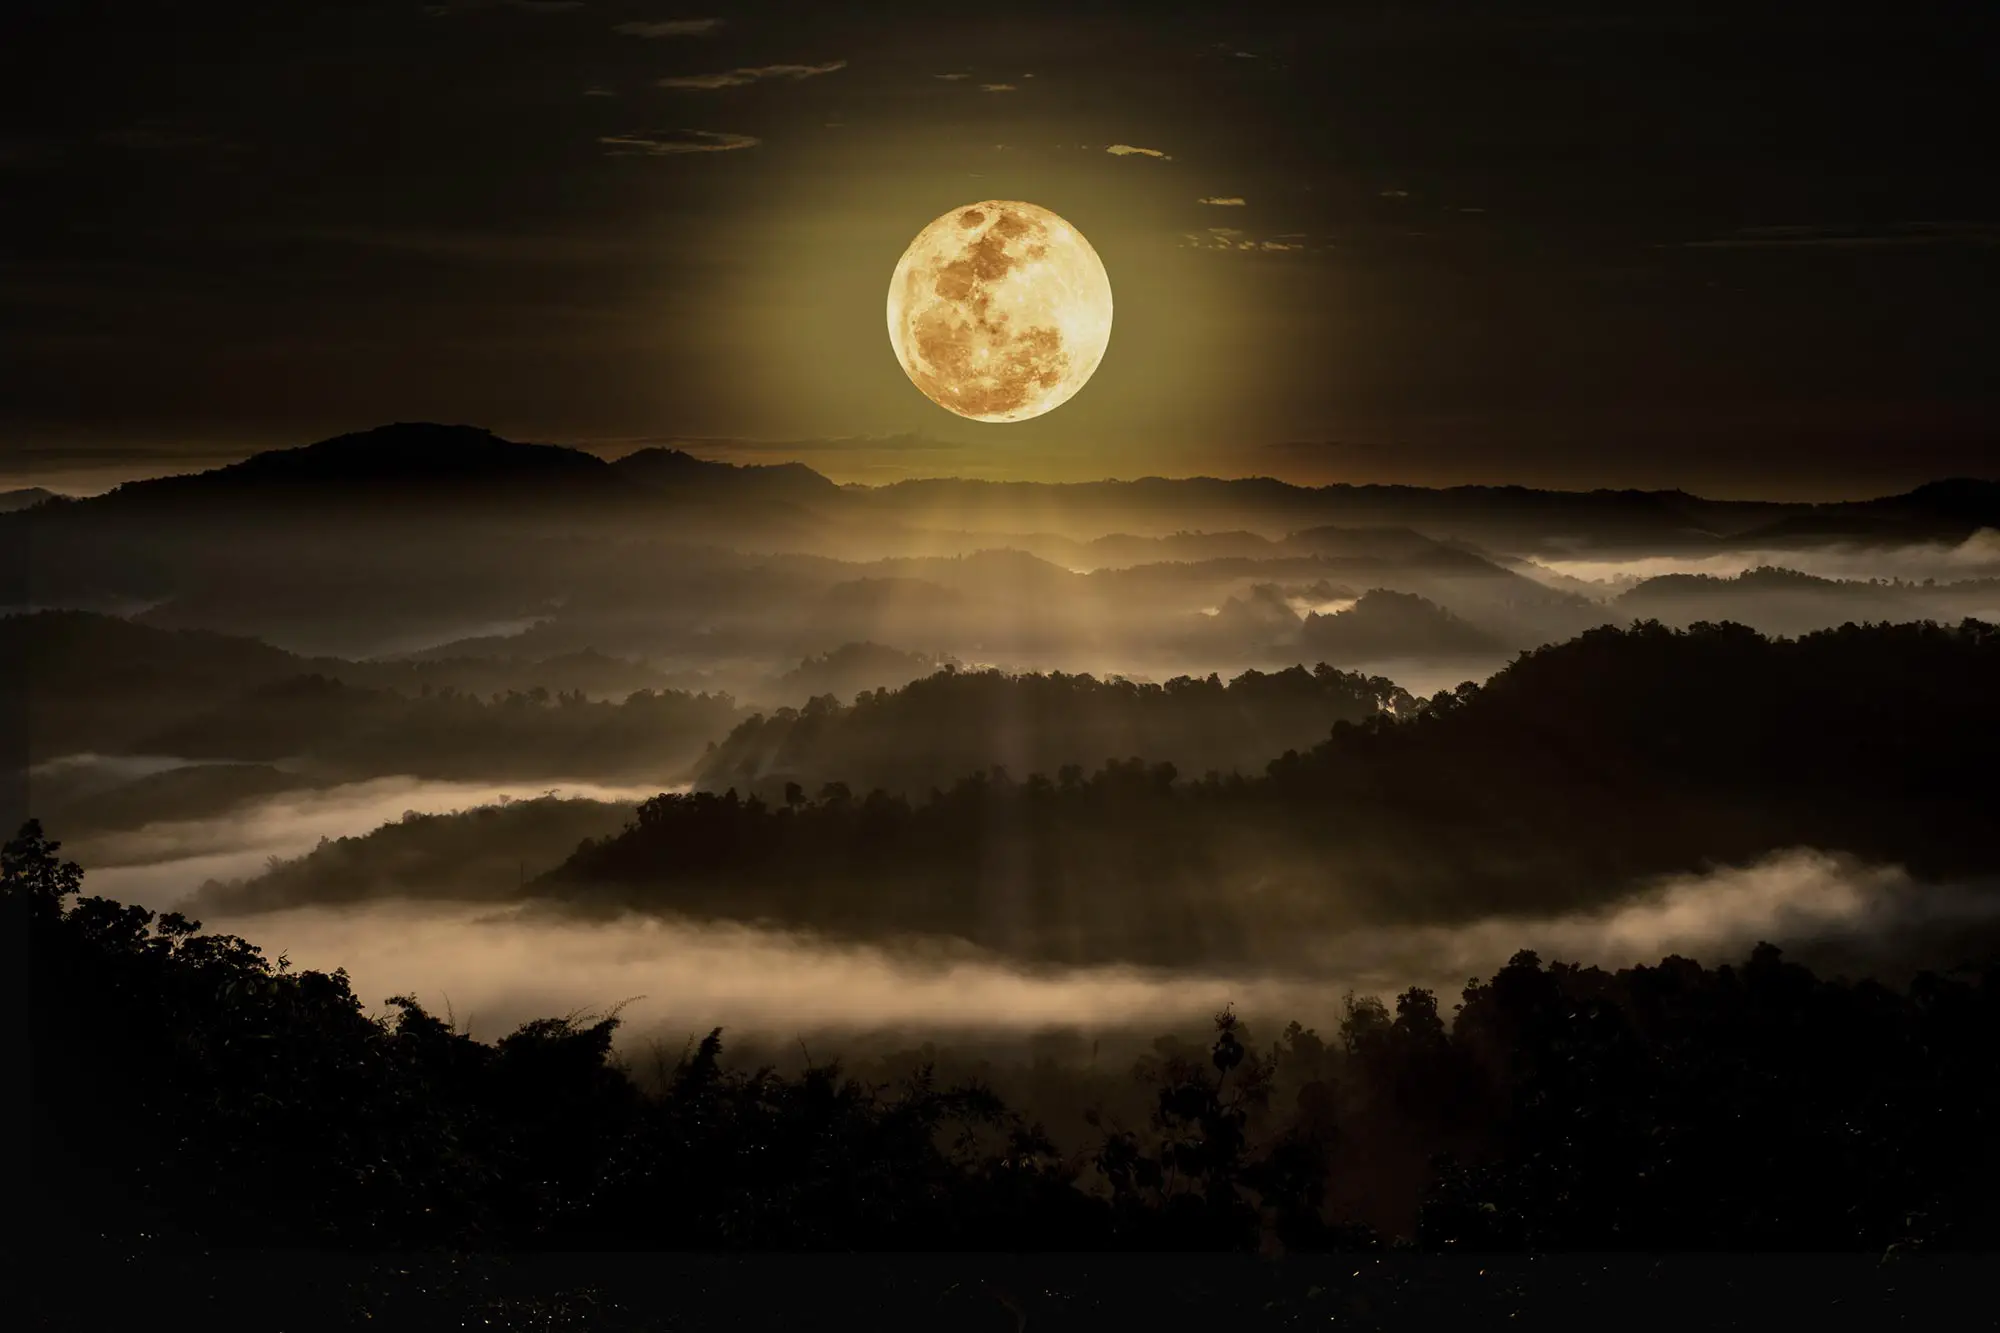 “قمر الدودة” يشق طريقه عبر سماء الأرض معلنا نهاية الشتاء وقدوم الدفء